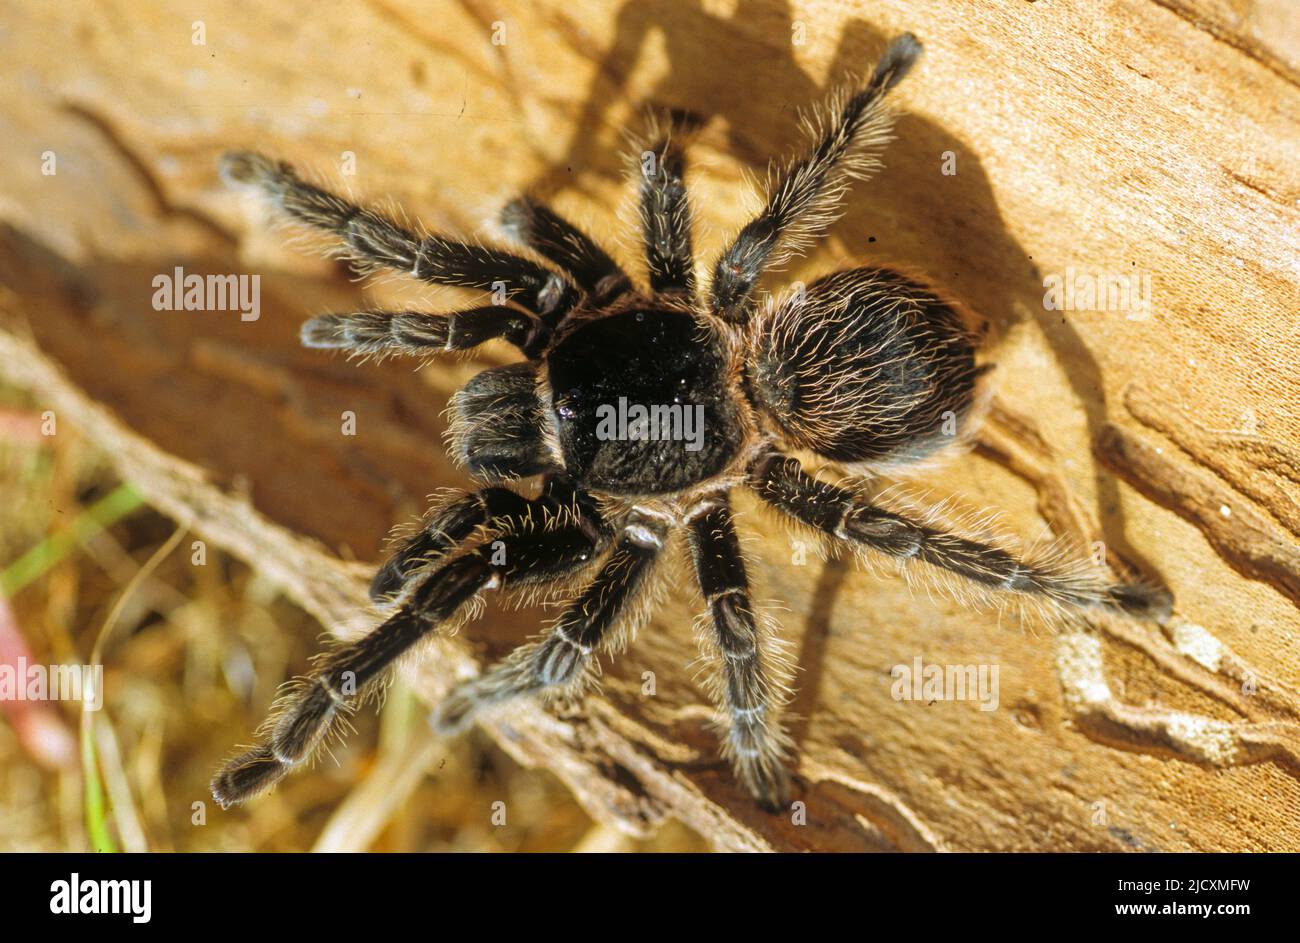 Taranteln umfassen eine Gruppe großer und oft haariger Spinnen der Familie Theraphosidae. Stockfoto